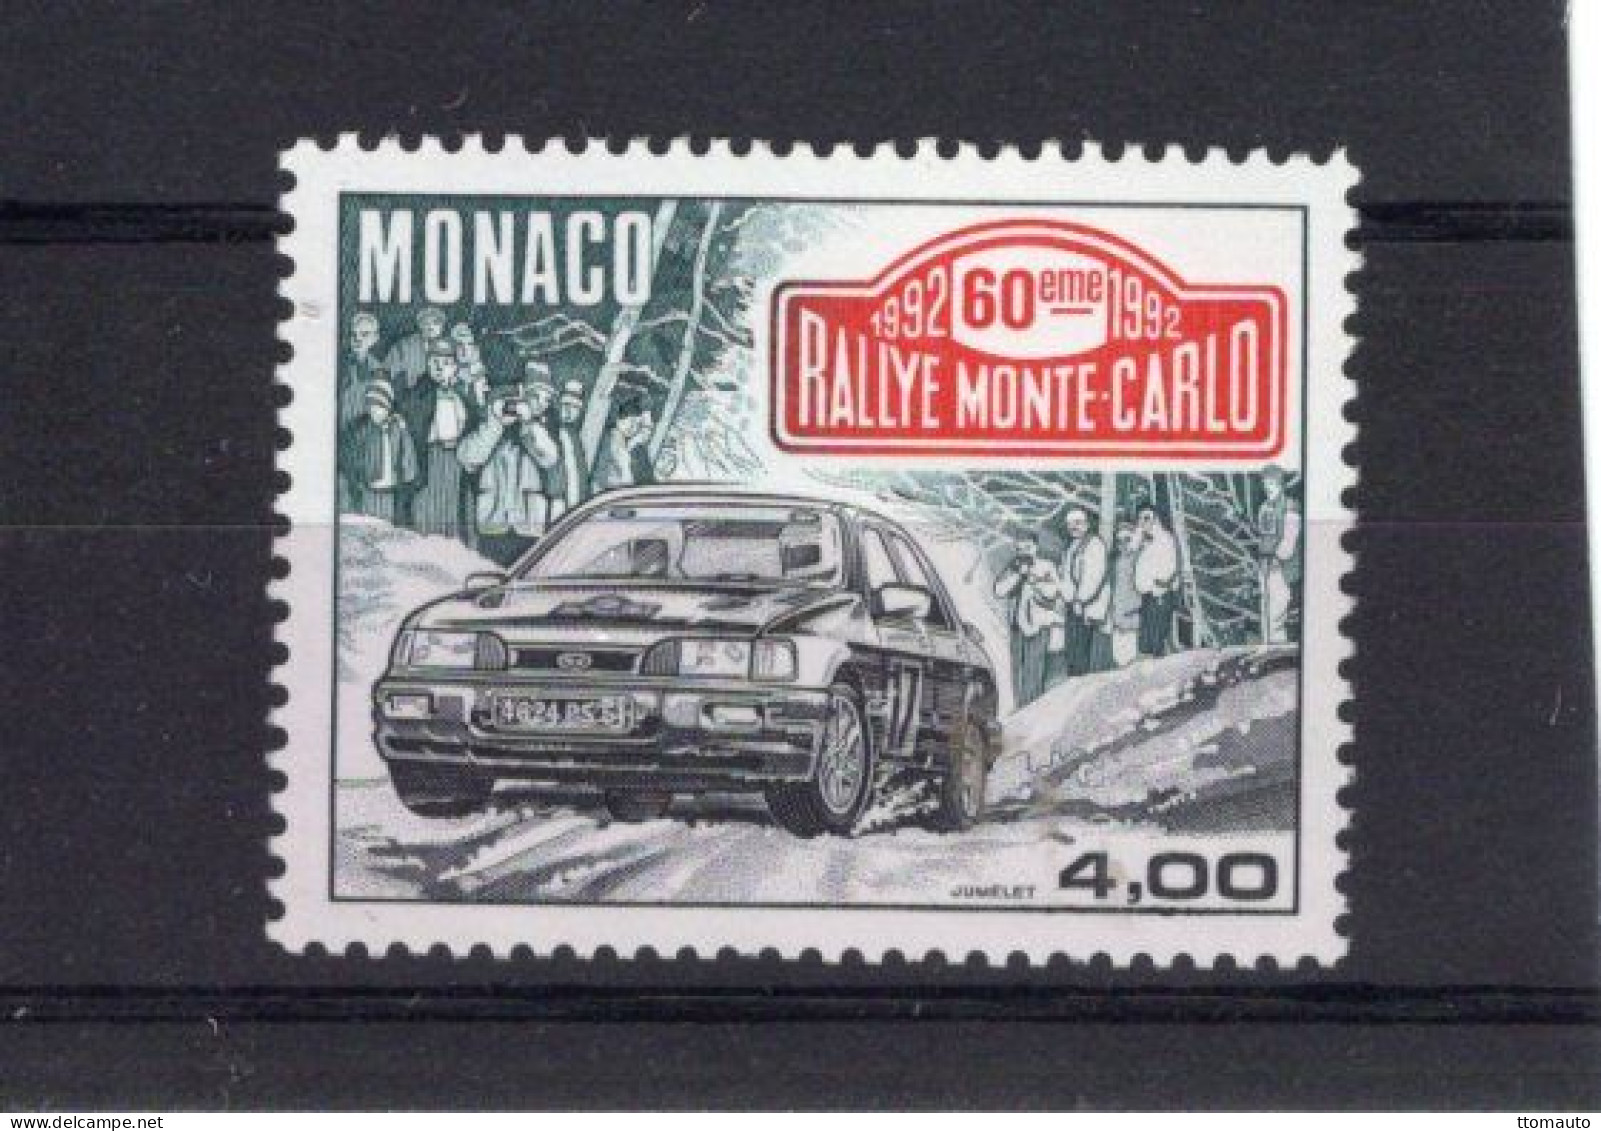 Rallye Monte-Carlo 1992 - Ford Sapphire Cosworth - Monaco Timbre Neuf/Mint/MNH - Automobile